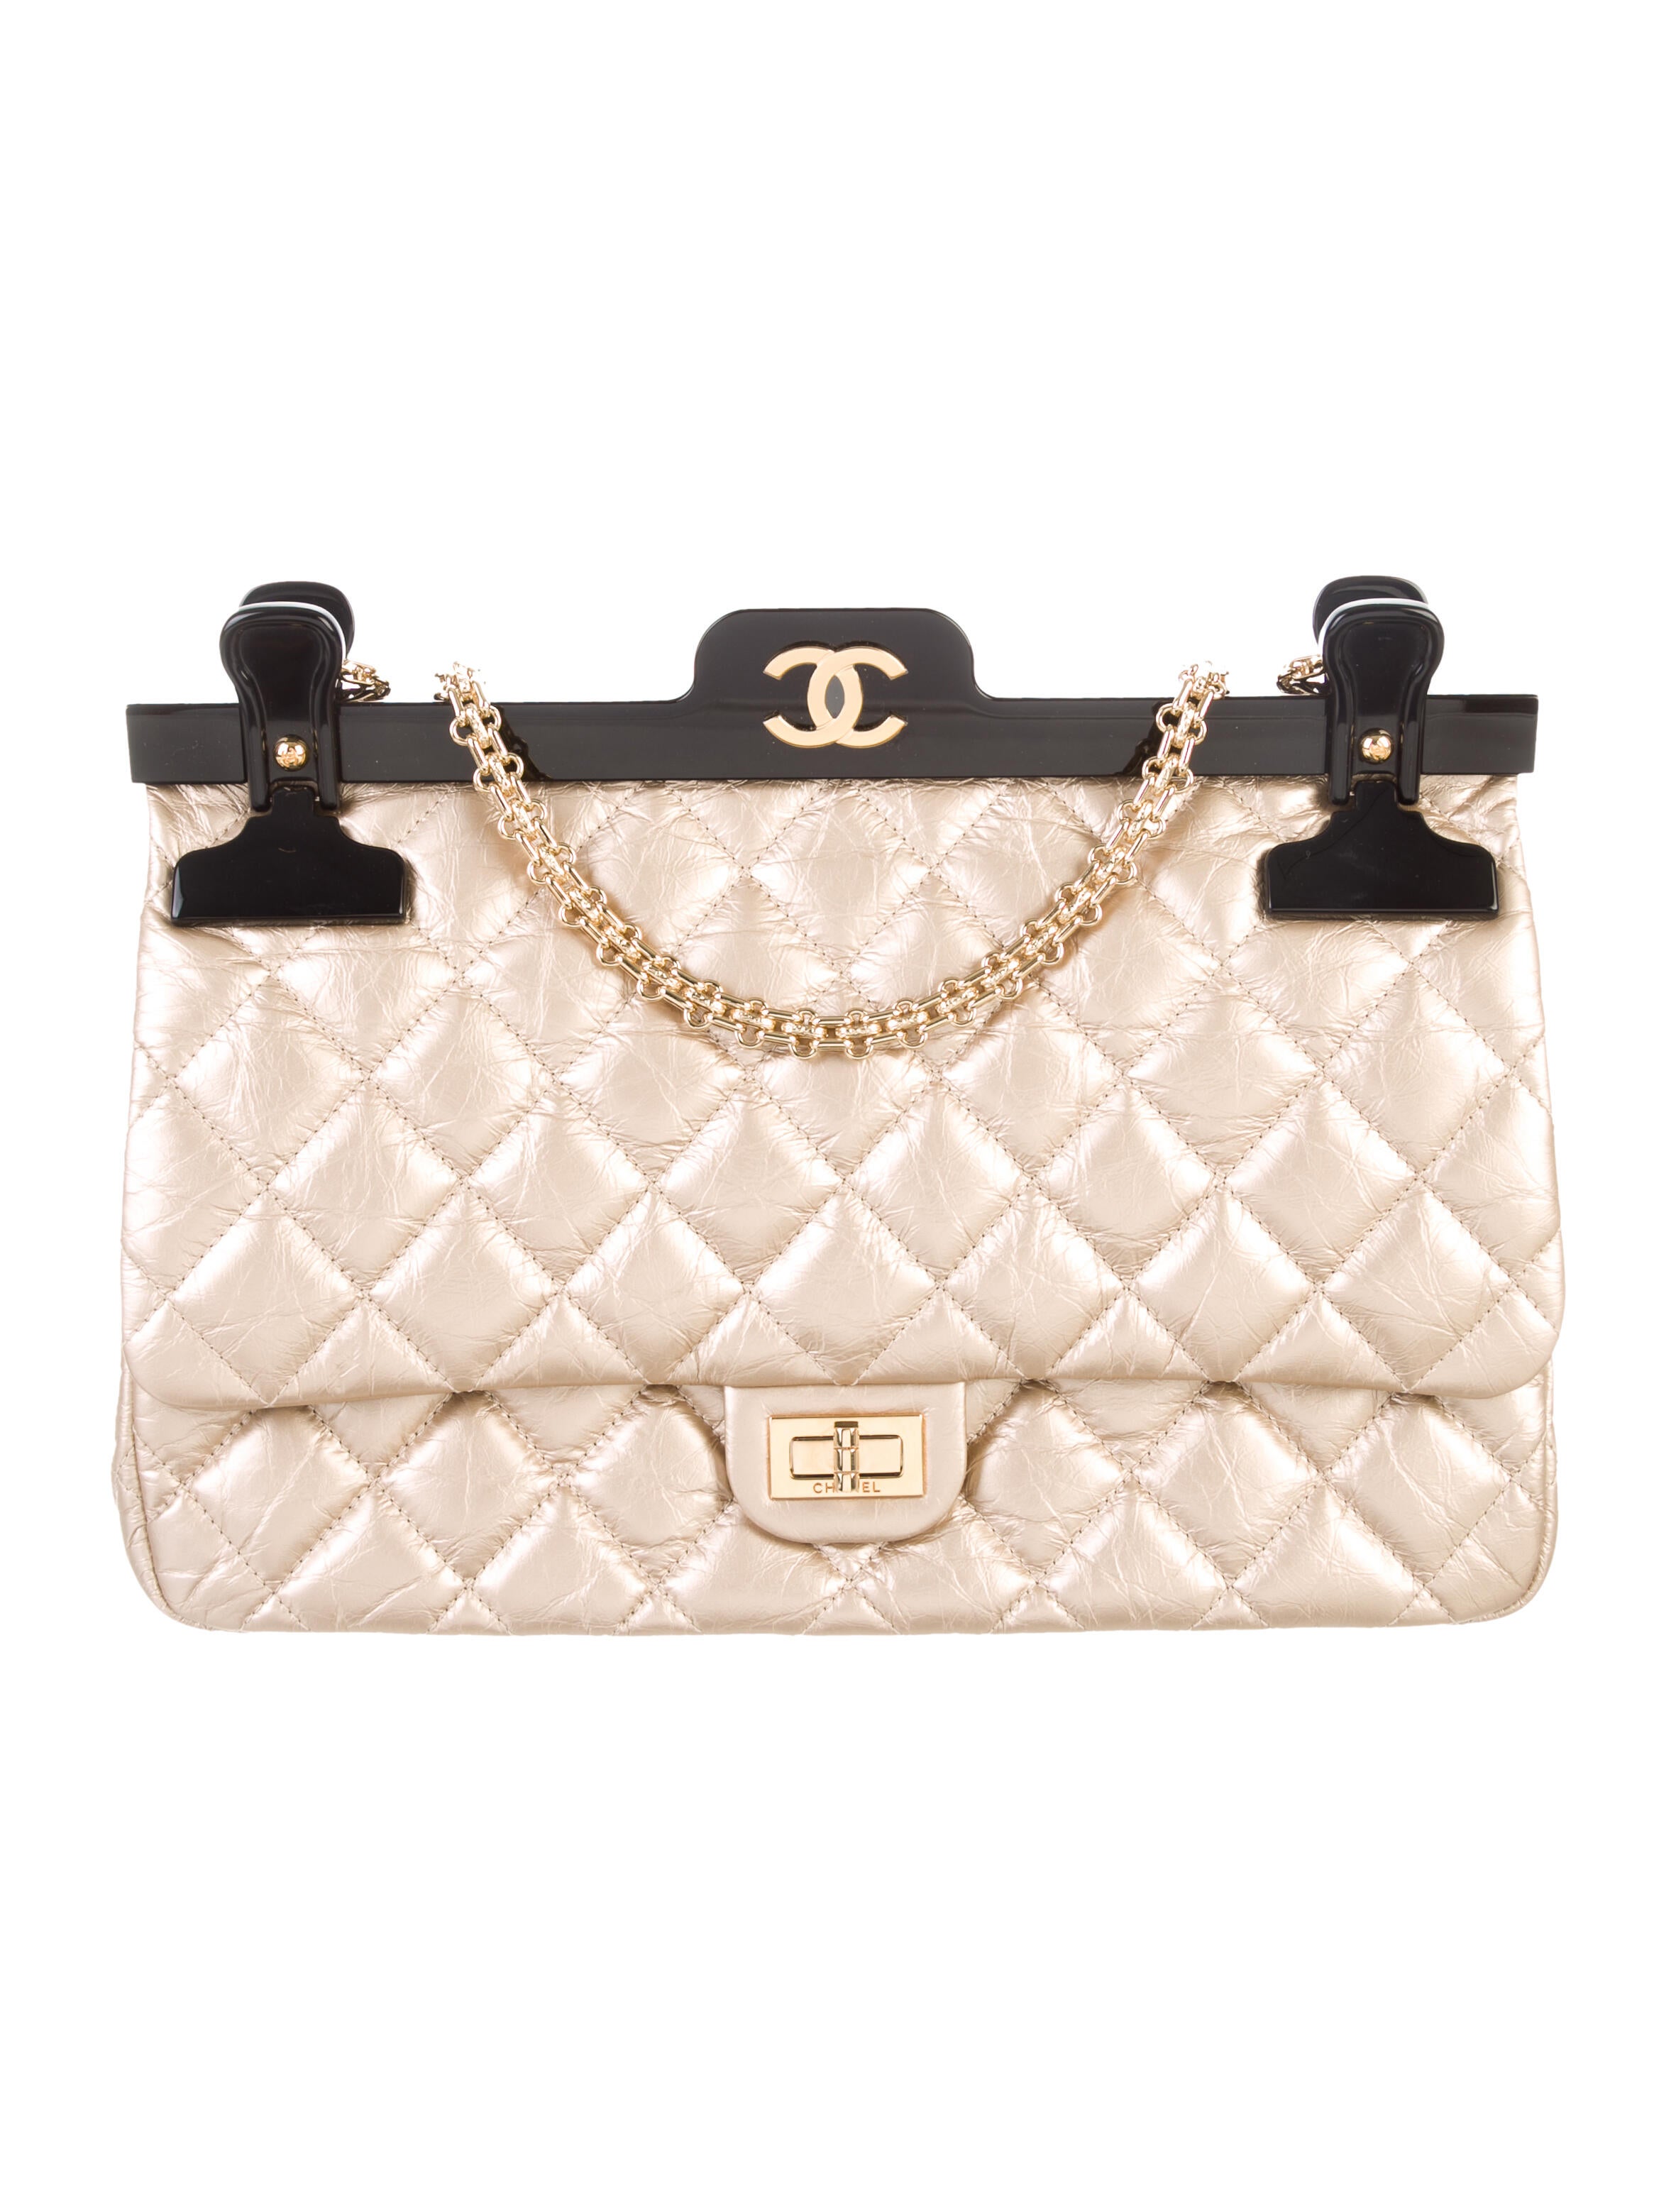 Top 7 mẫu túi xách Chanel chính hãng bán chạy nhất hiện nay